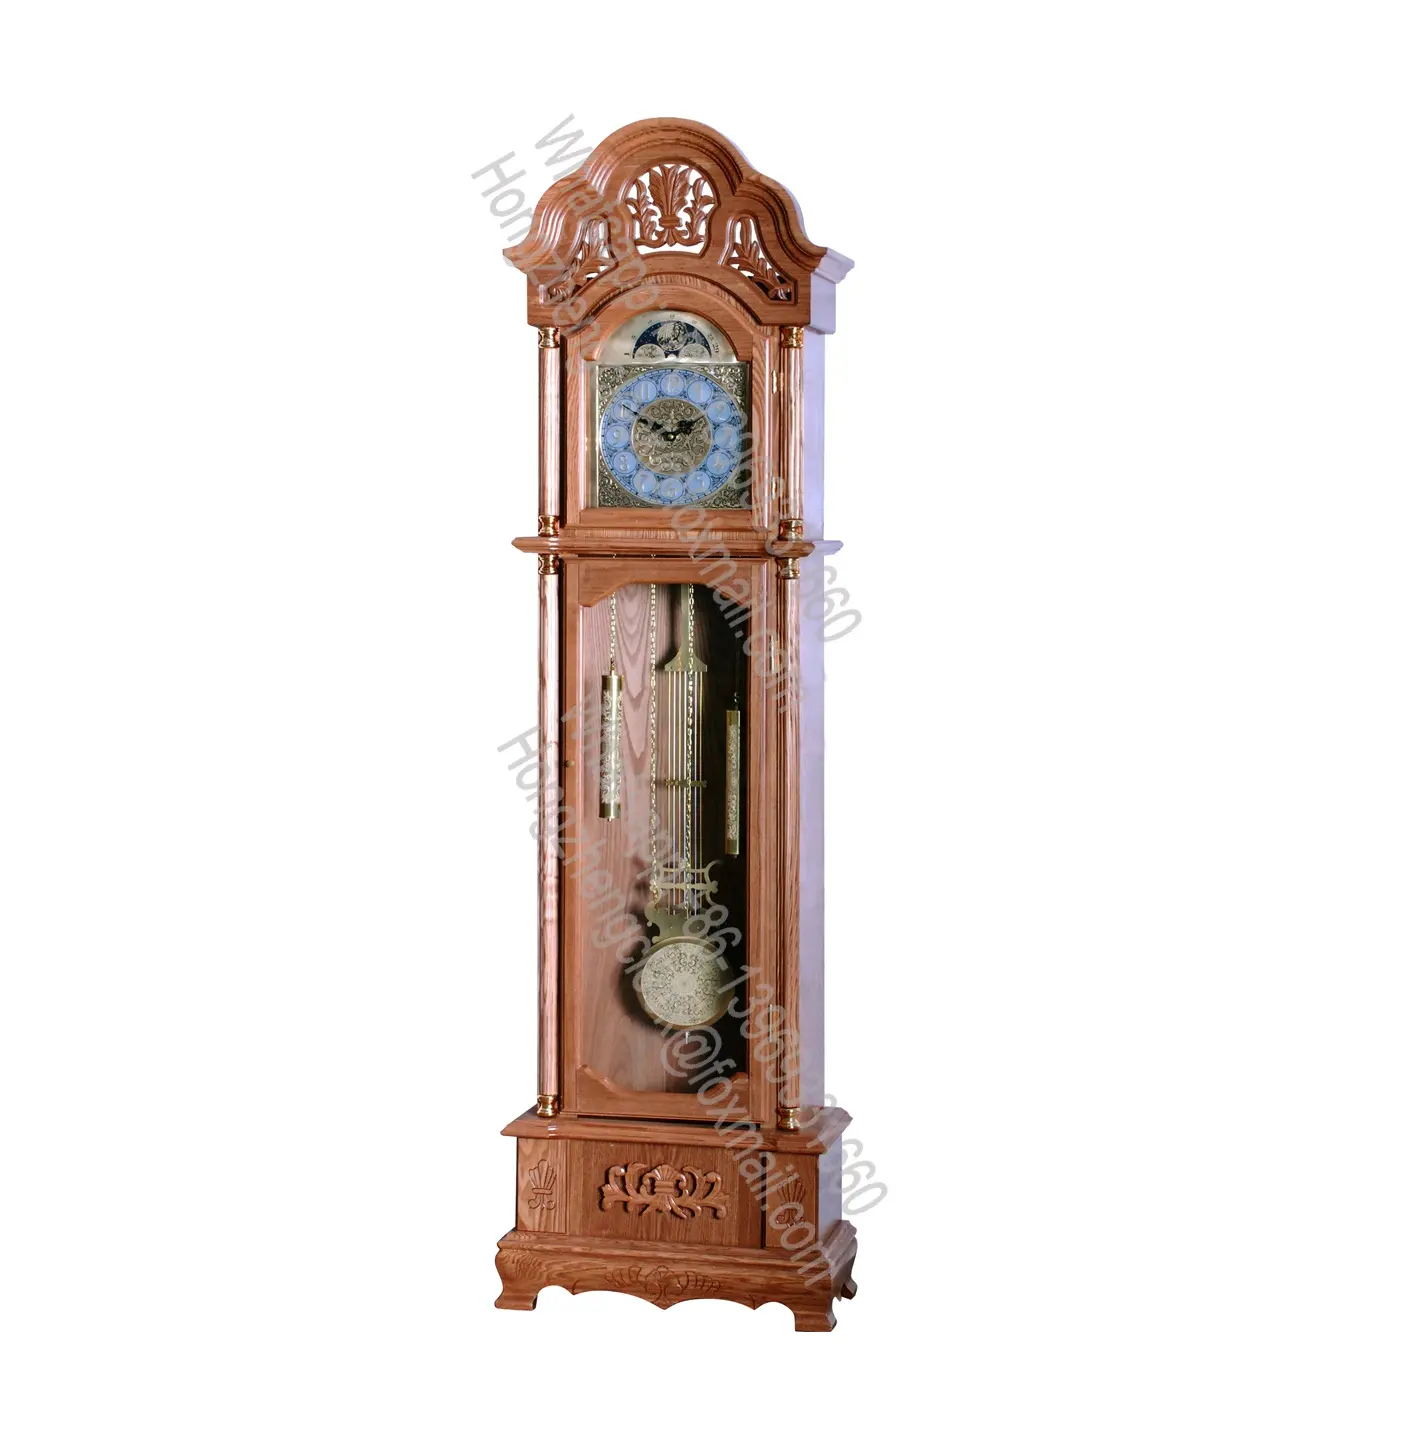 Jam Pendulum lantai kakek desain tradisional jam tangan elegan dan hasil ceri